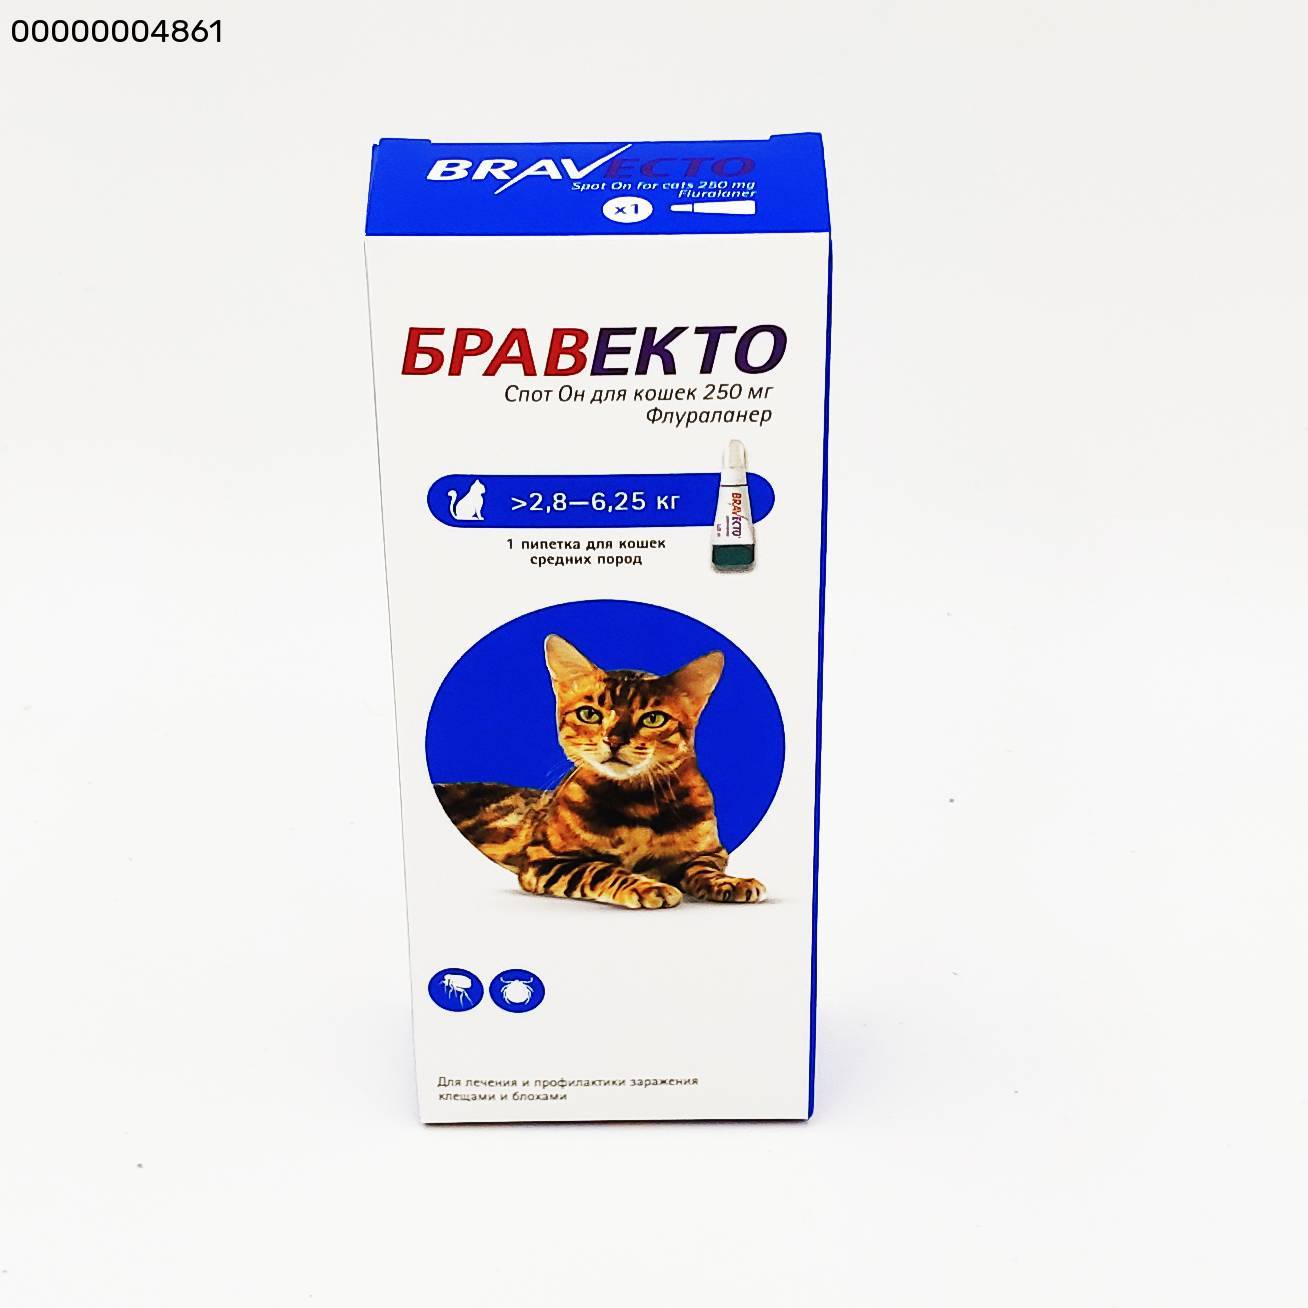 Как правильно применять таблетки бравекто для кошки: обзор инструкции